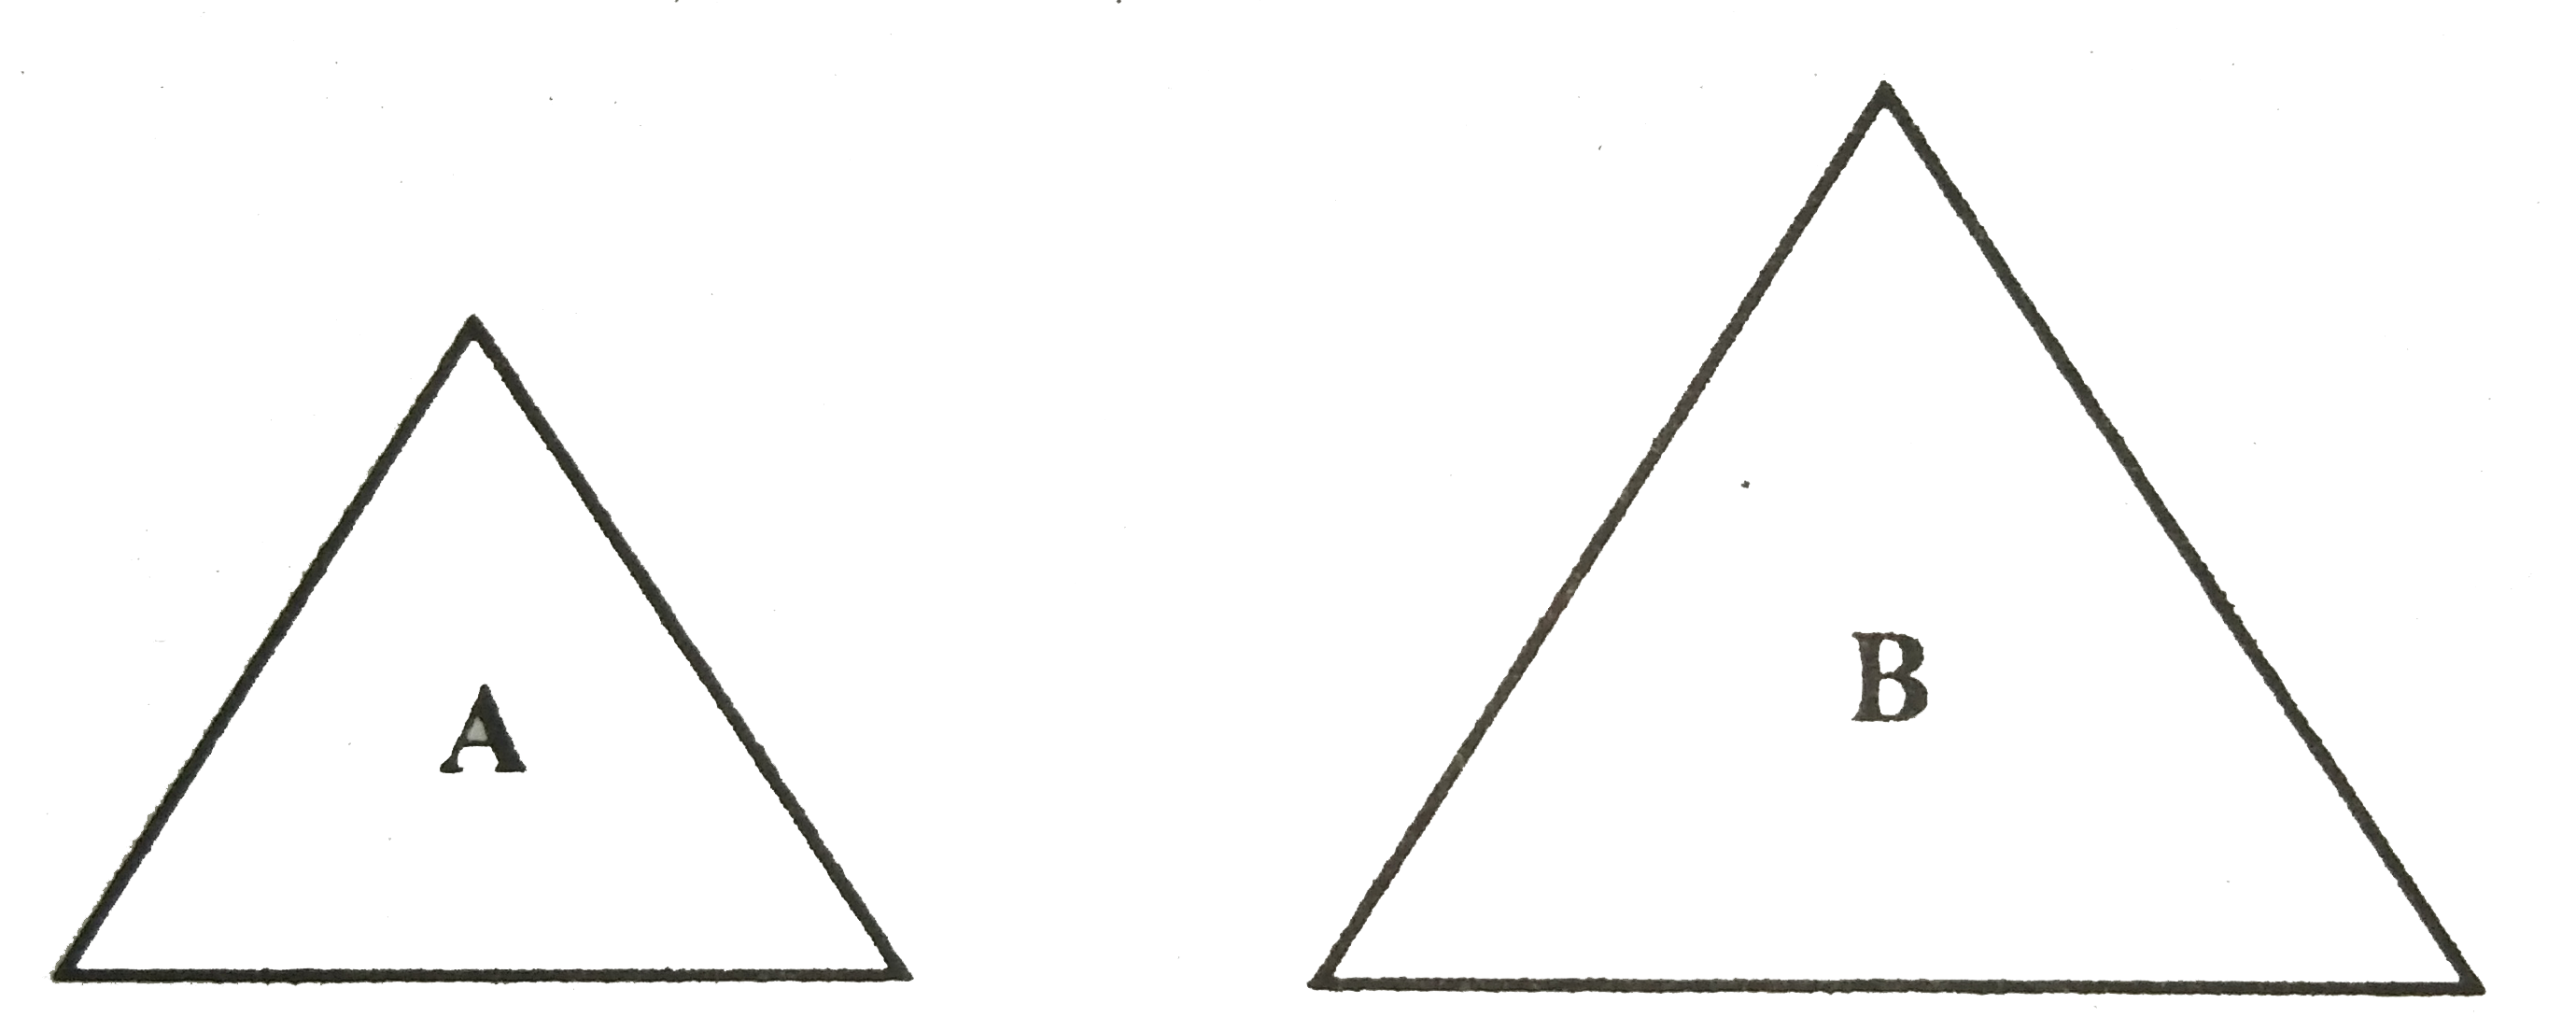 चित्र में A और B दो प्रिज्म है|  A छोटा और B बड़ा है | दोनों एक ही पदार्थ के बने है, किसकी  वर्ण विक्षेपण क्षमता अधिक होगी?